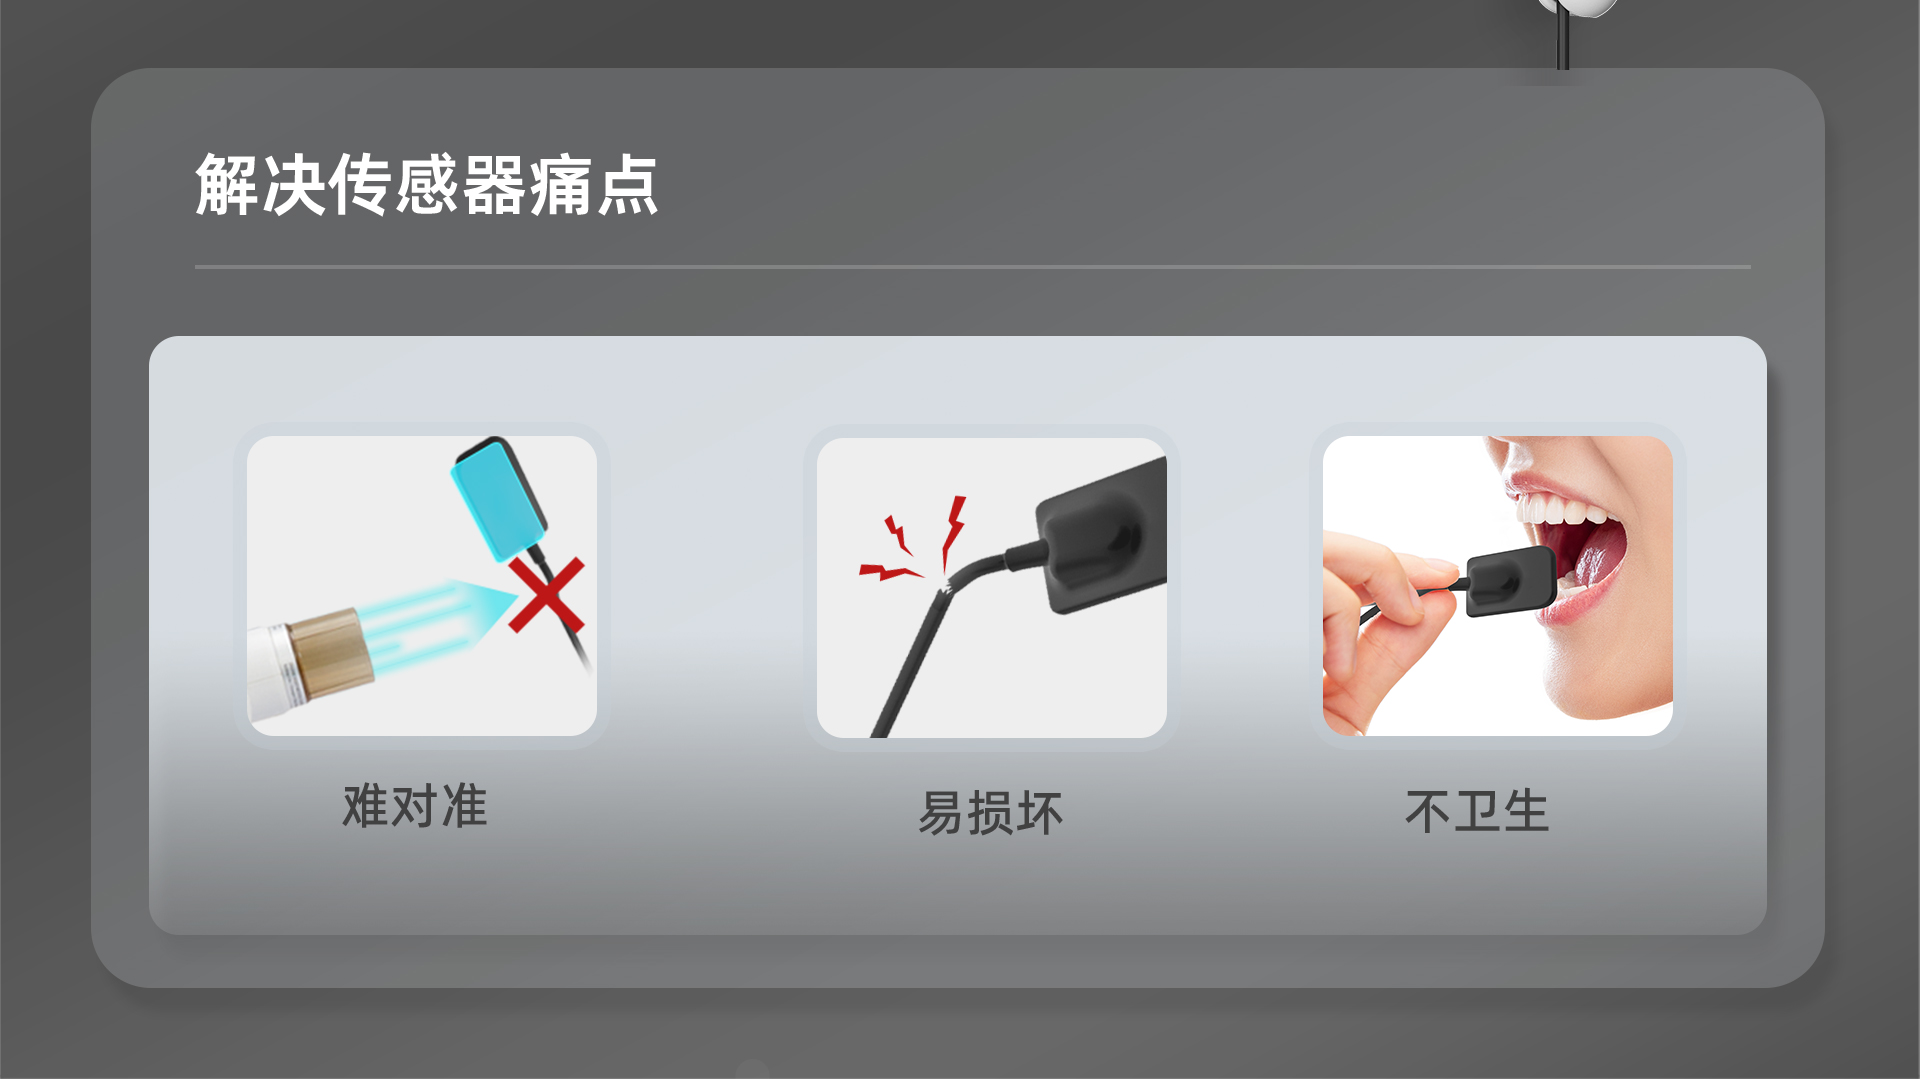 口内传感器支架产品介绍---网站中文_02.jpg